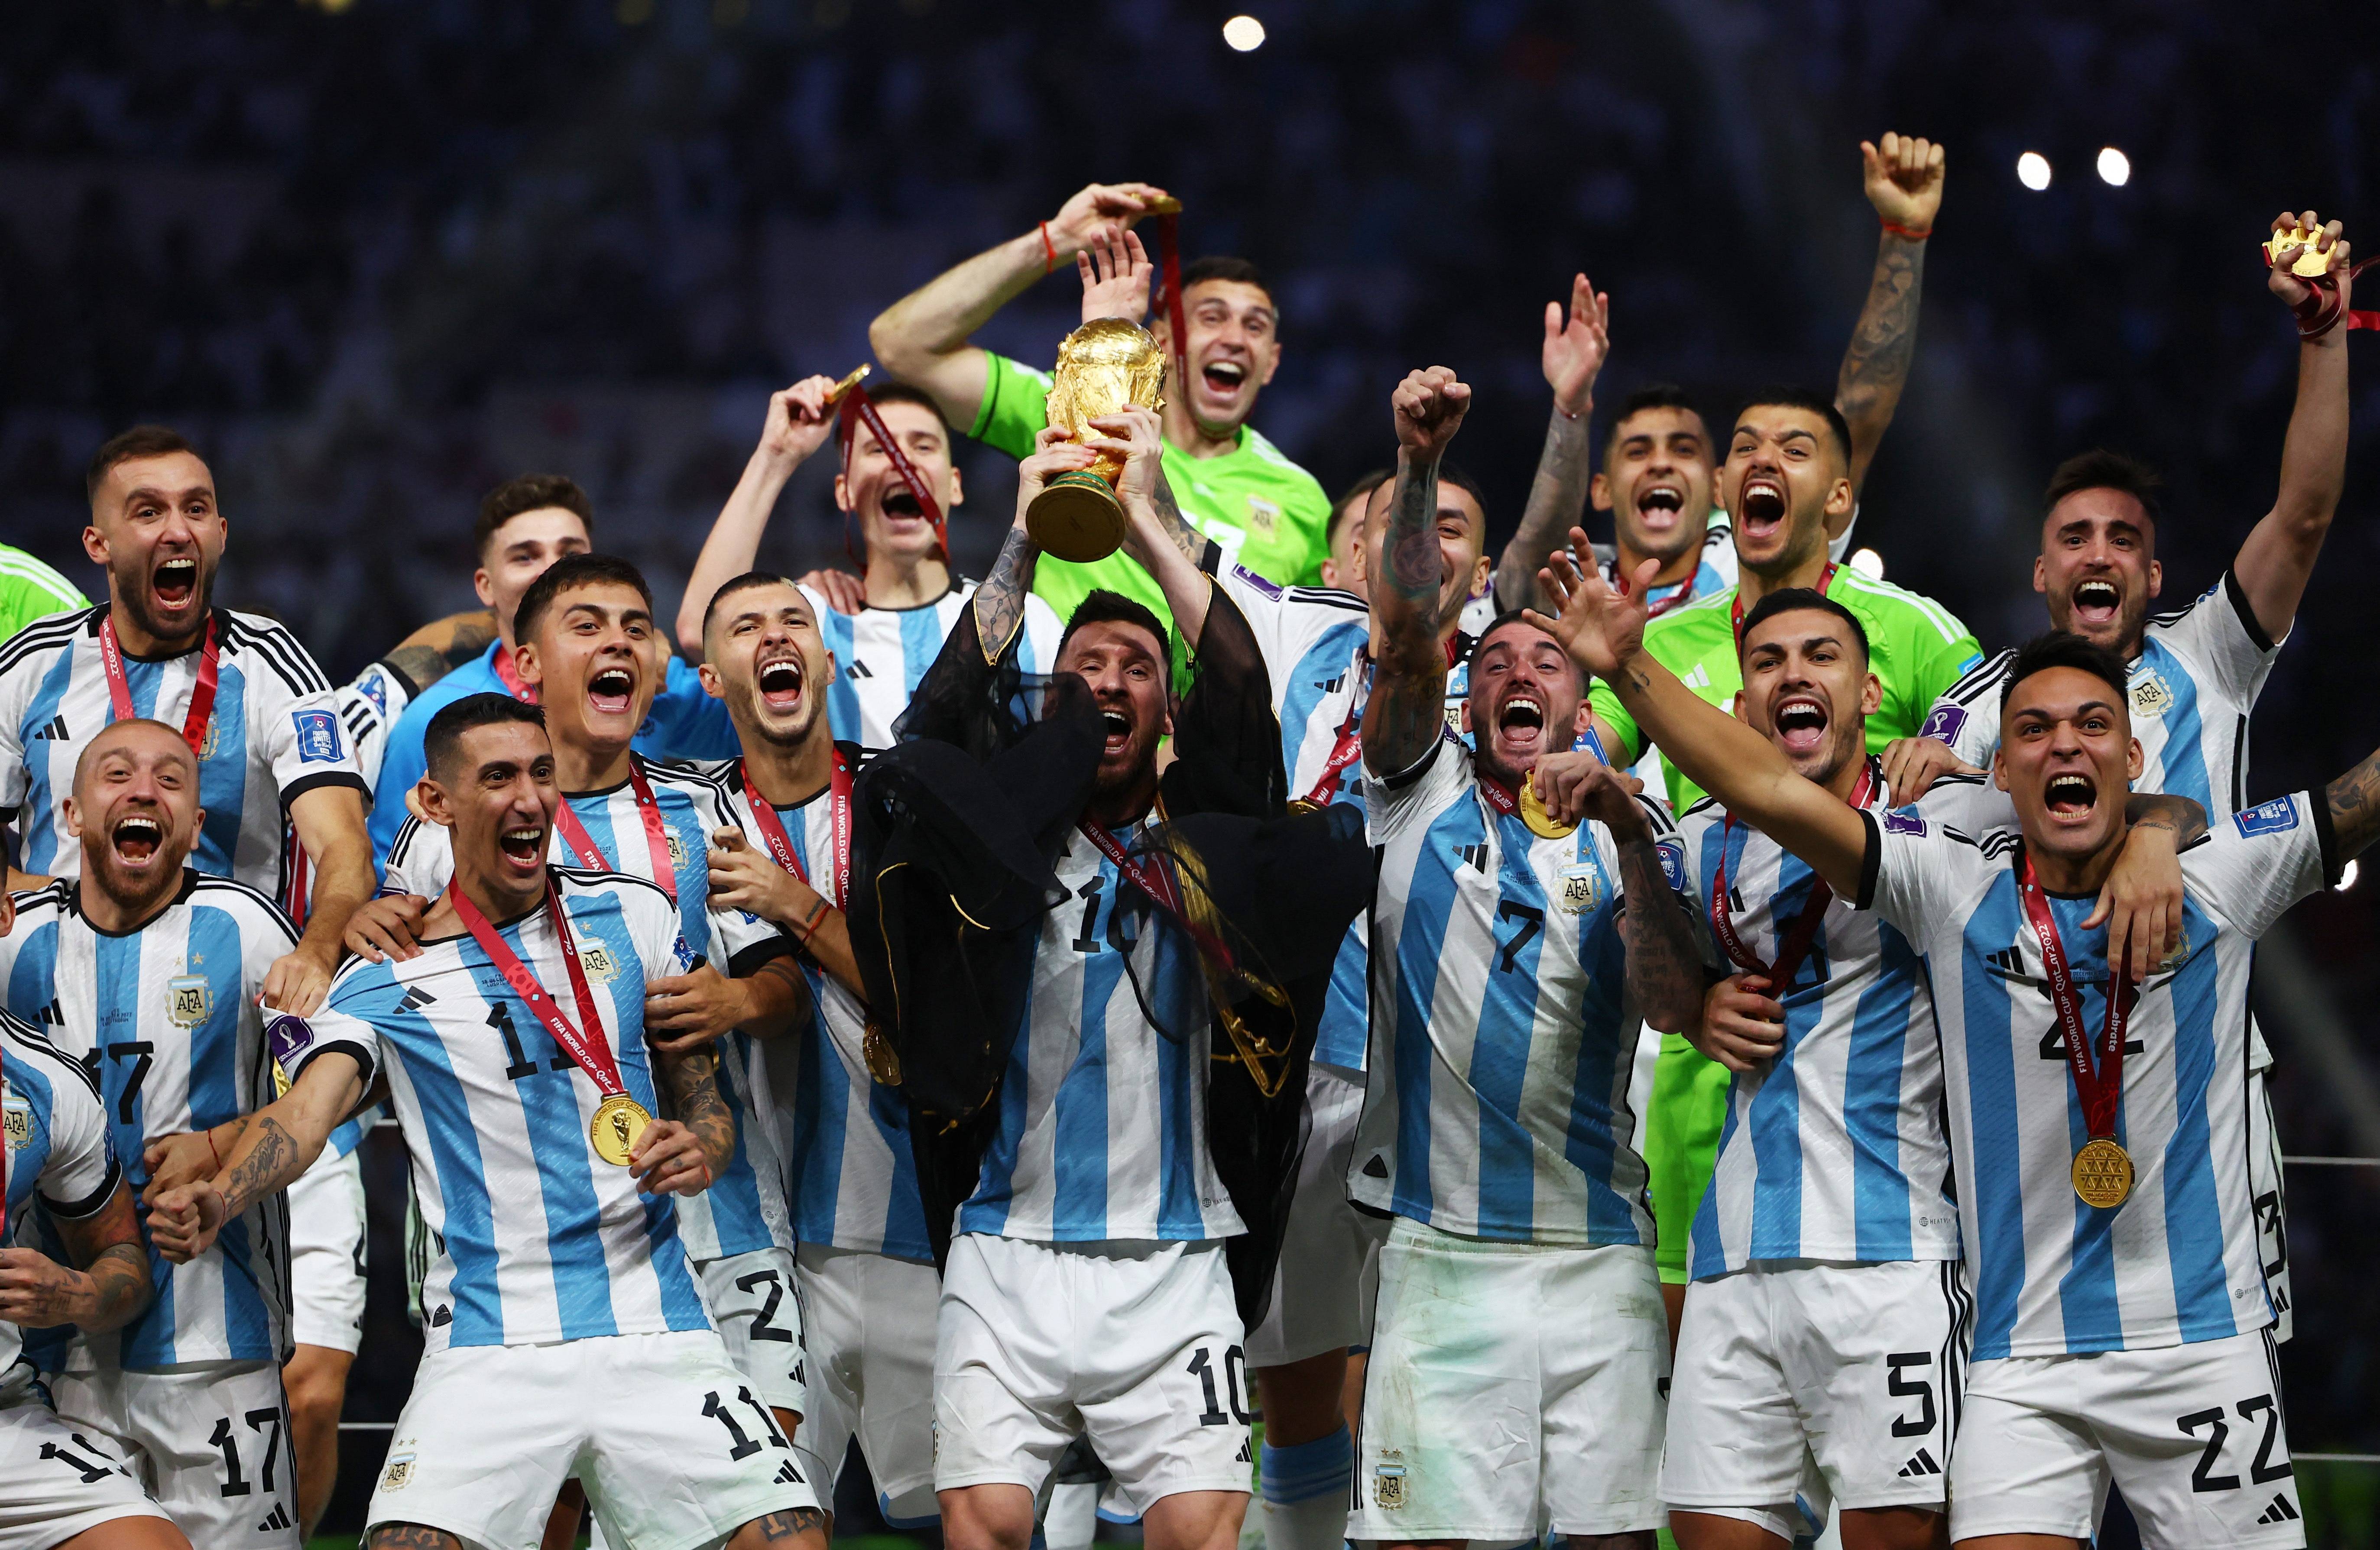 魔法打败魔法!30万阿根廷人请愿法国停止哭泣，回应重踢世界杯决赛